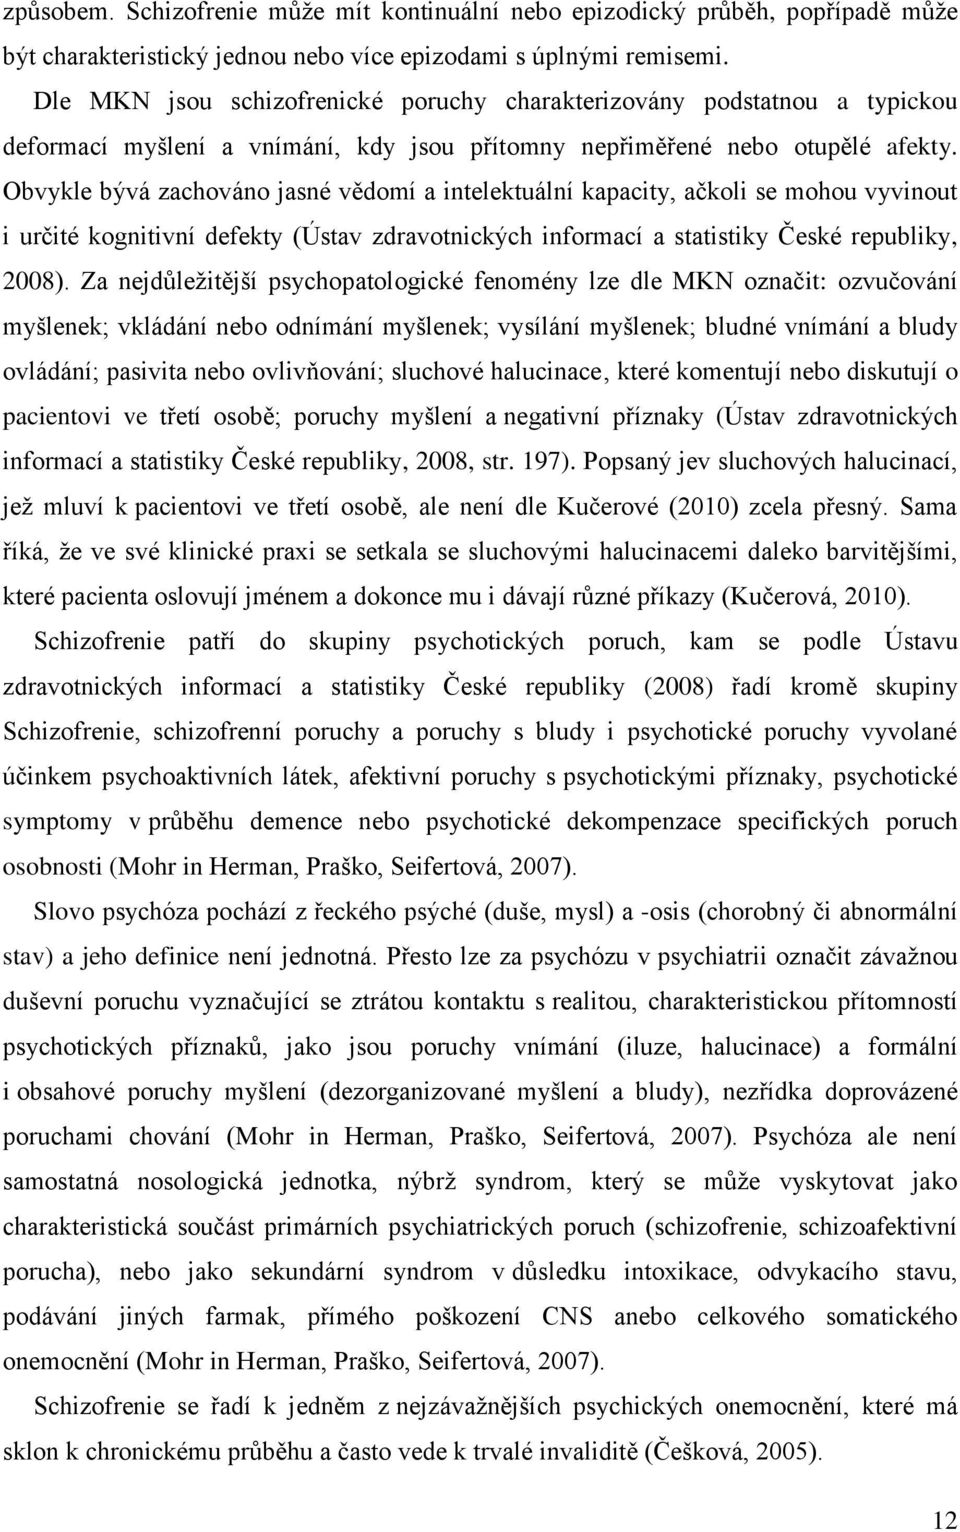 Obvykle bývá zachováno jasné vědomí a intelektuální kapacity, ačkoli se mohou vyvinout i určité kognitivní defekty (Ústav zdravotnických informací a statistiky České republiky, 2008).